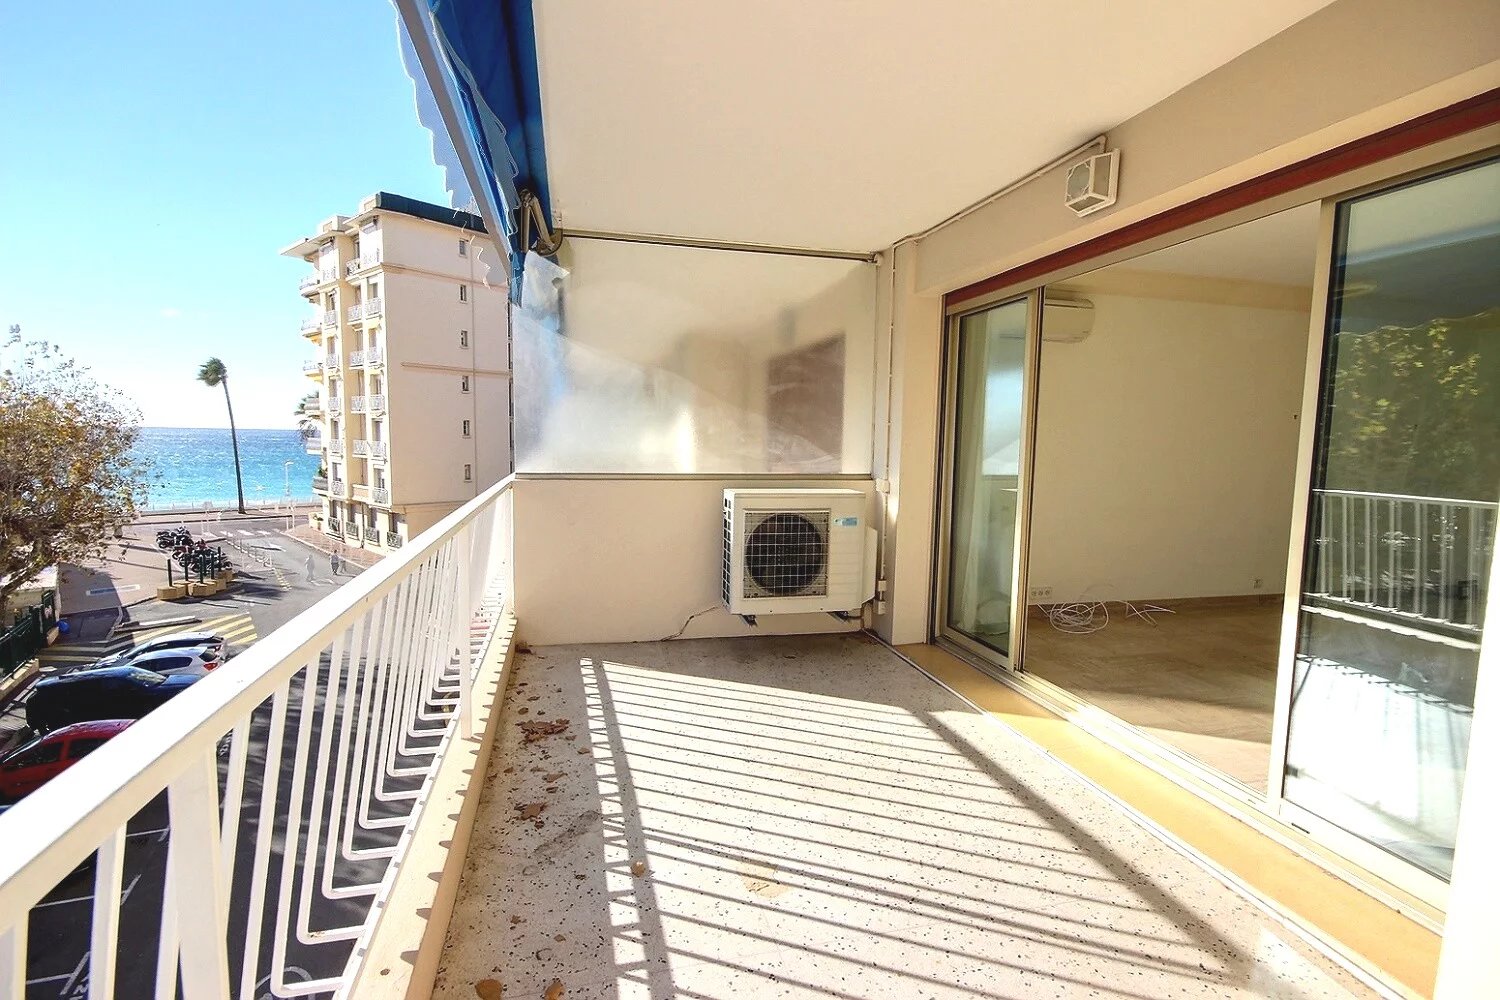 Annonce Immobilière : Charmant Appartement 3 Pièces à Rénover avec Vue Mer à Cannes - Plages du Midi